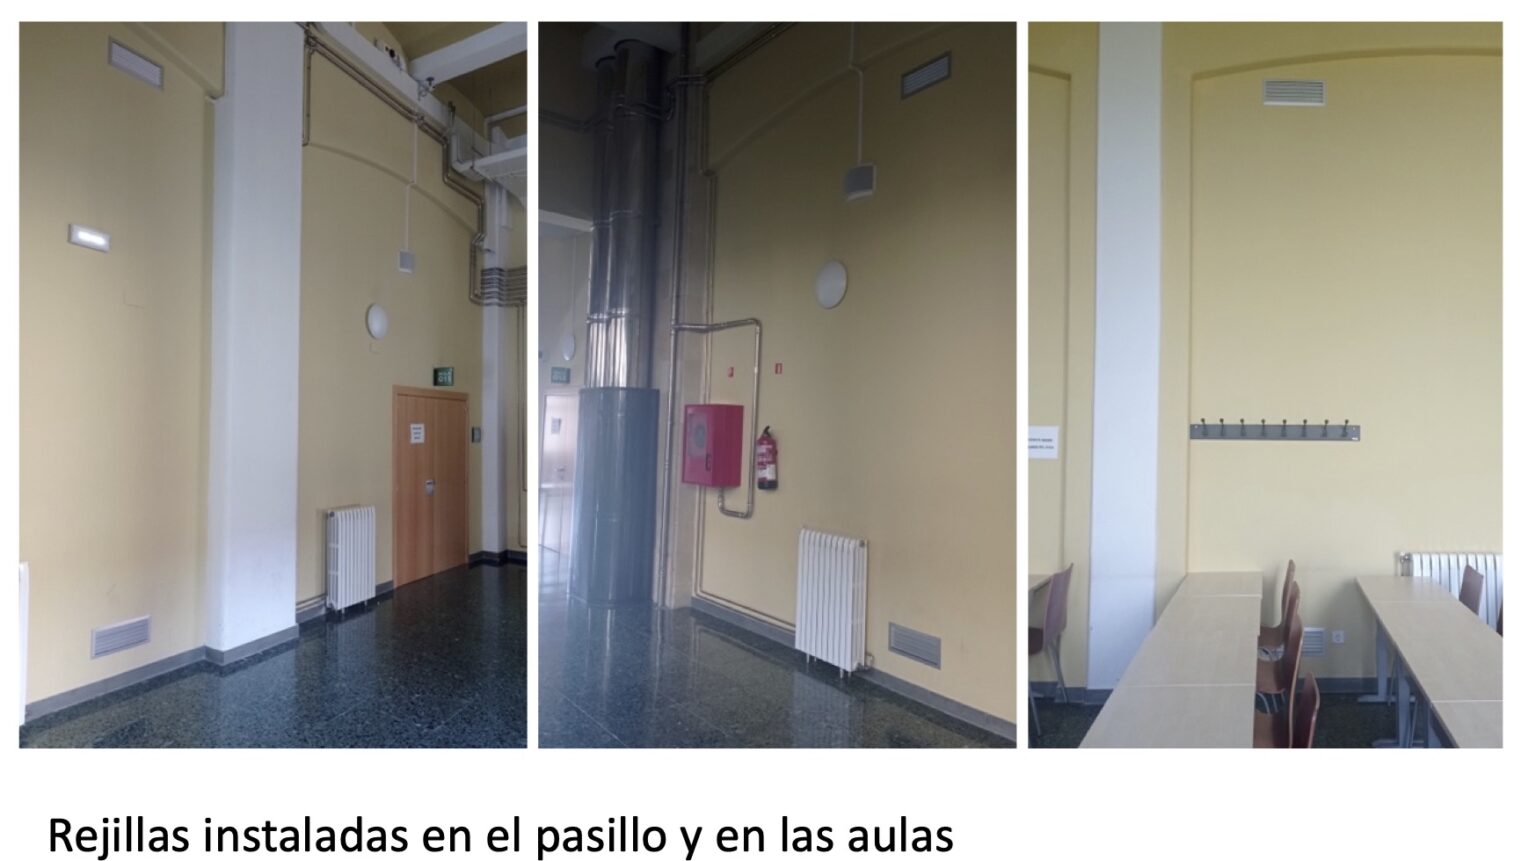 Rejillas instaladas en pasillo y aulas